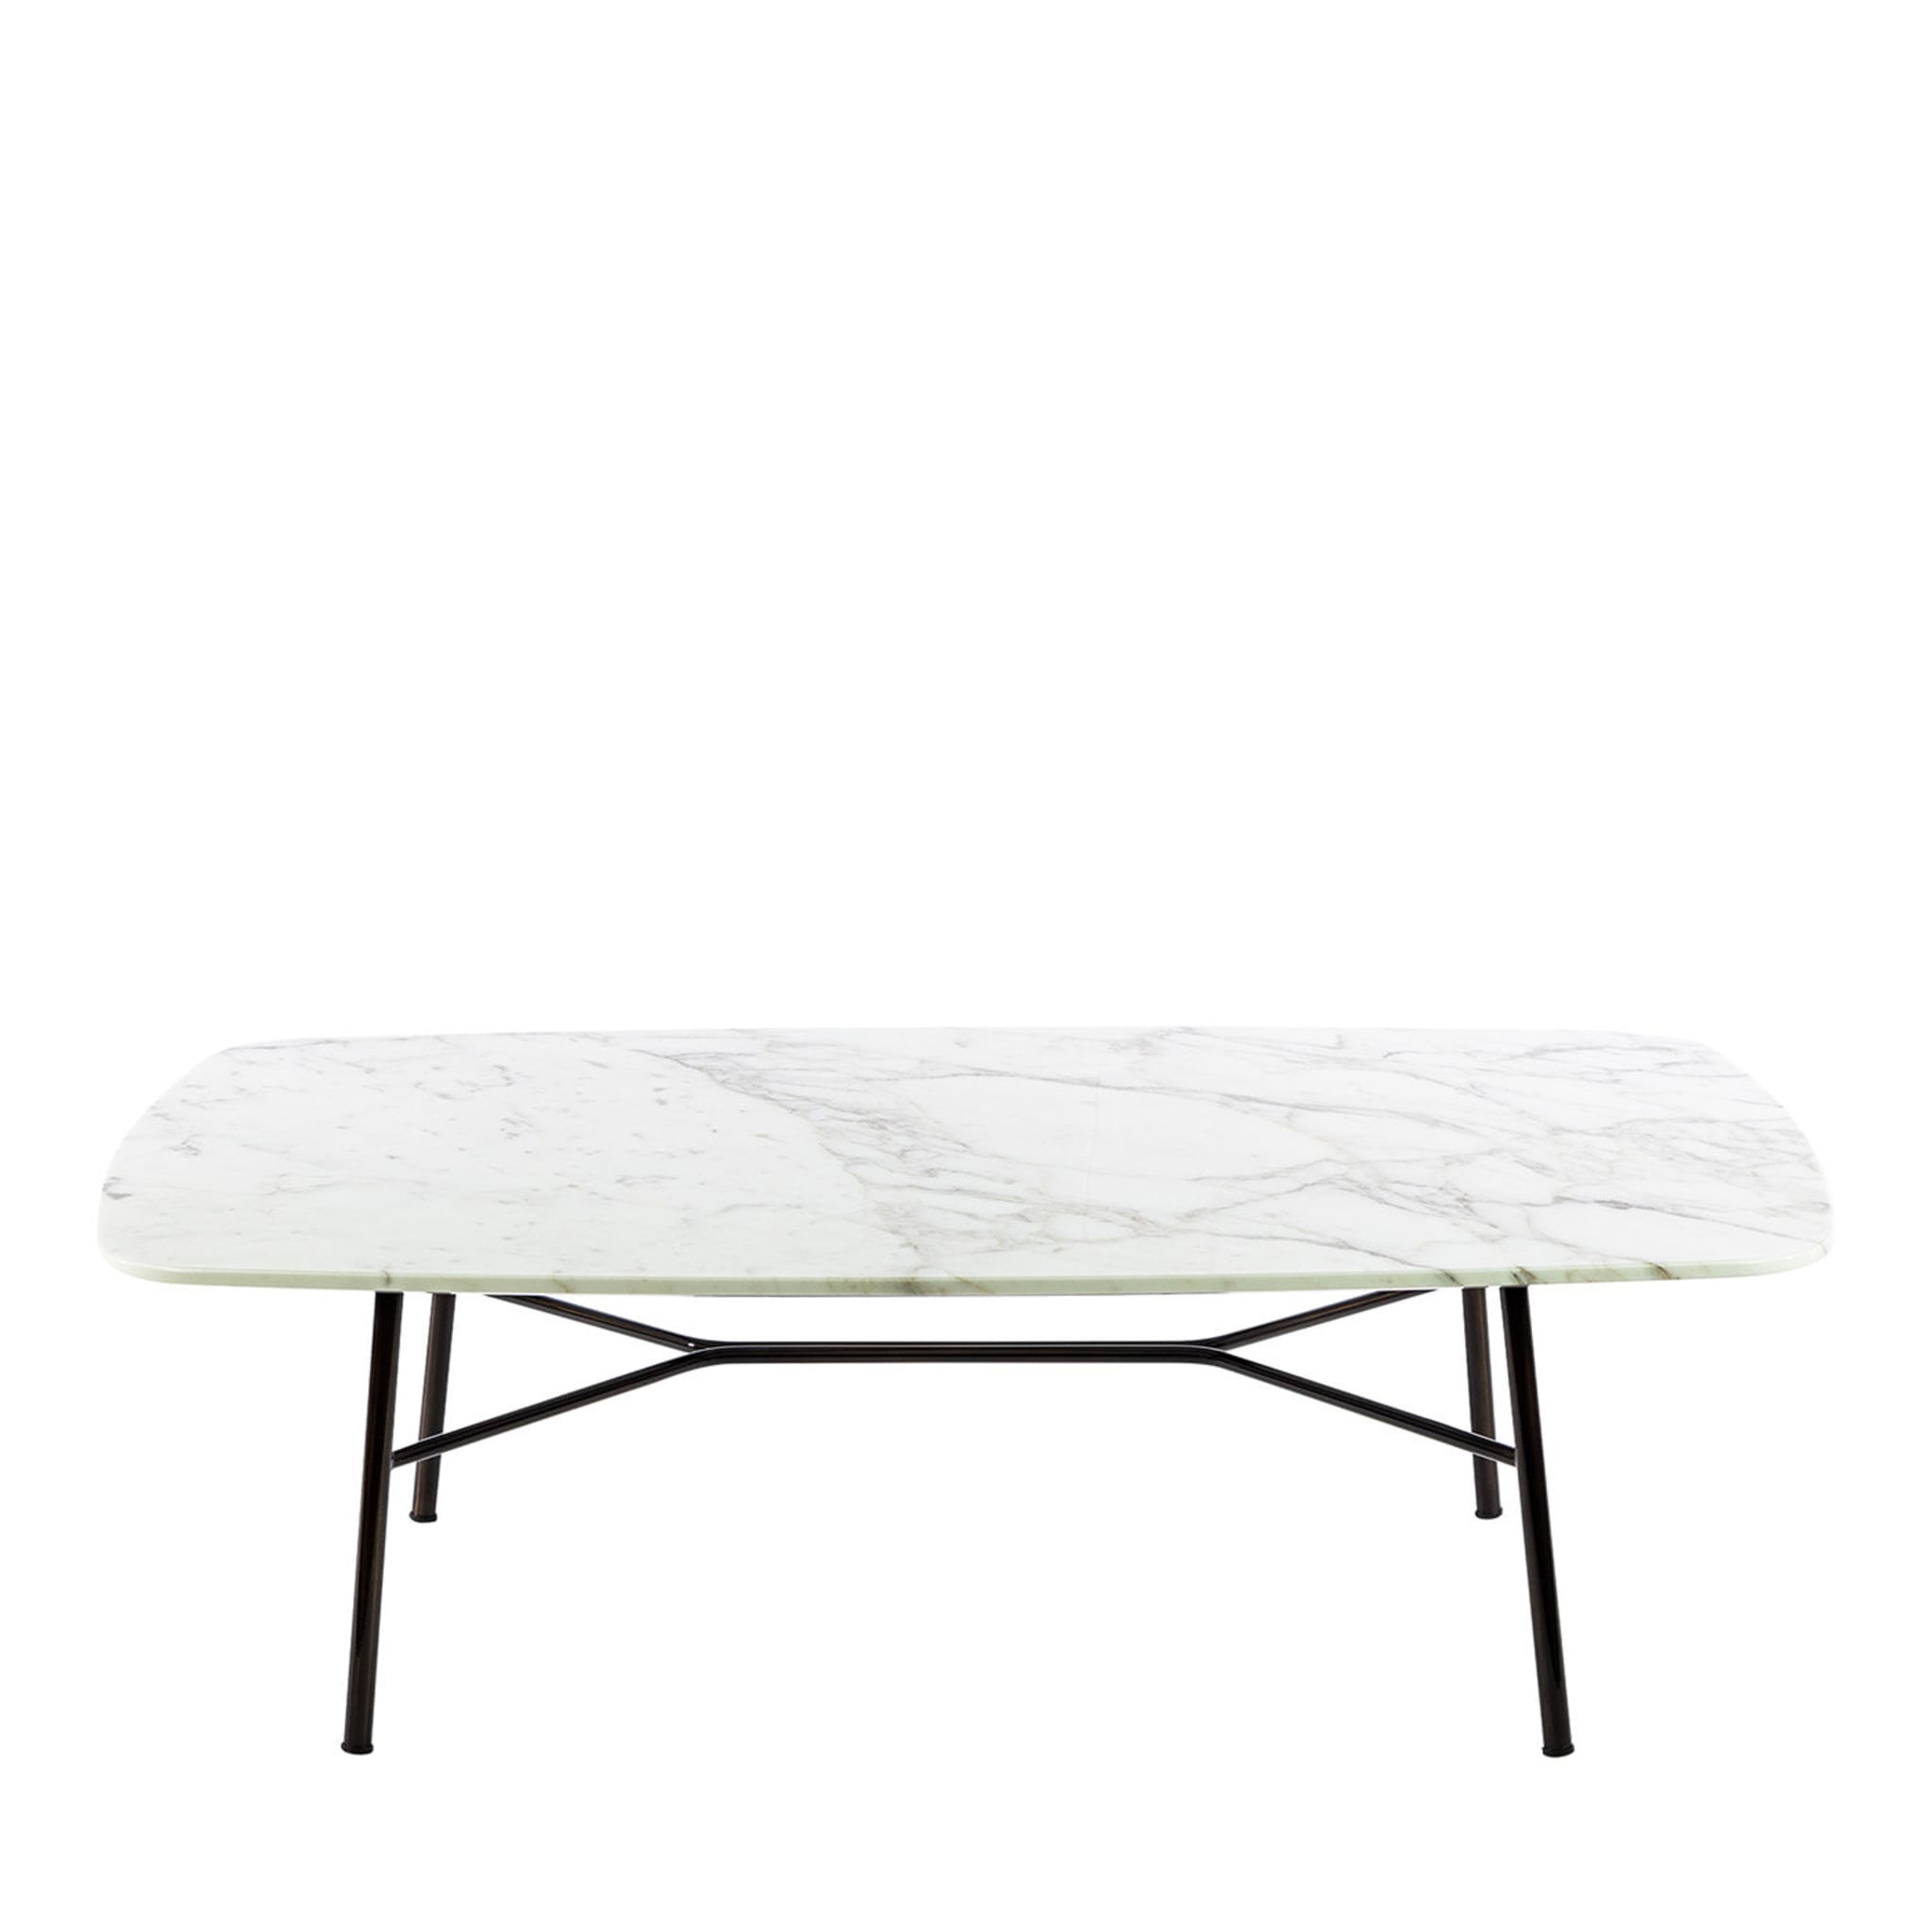 Tavolino rettangolare Yuki con piano bianco di Carrara # 2 di Ep Studio - Vista principale